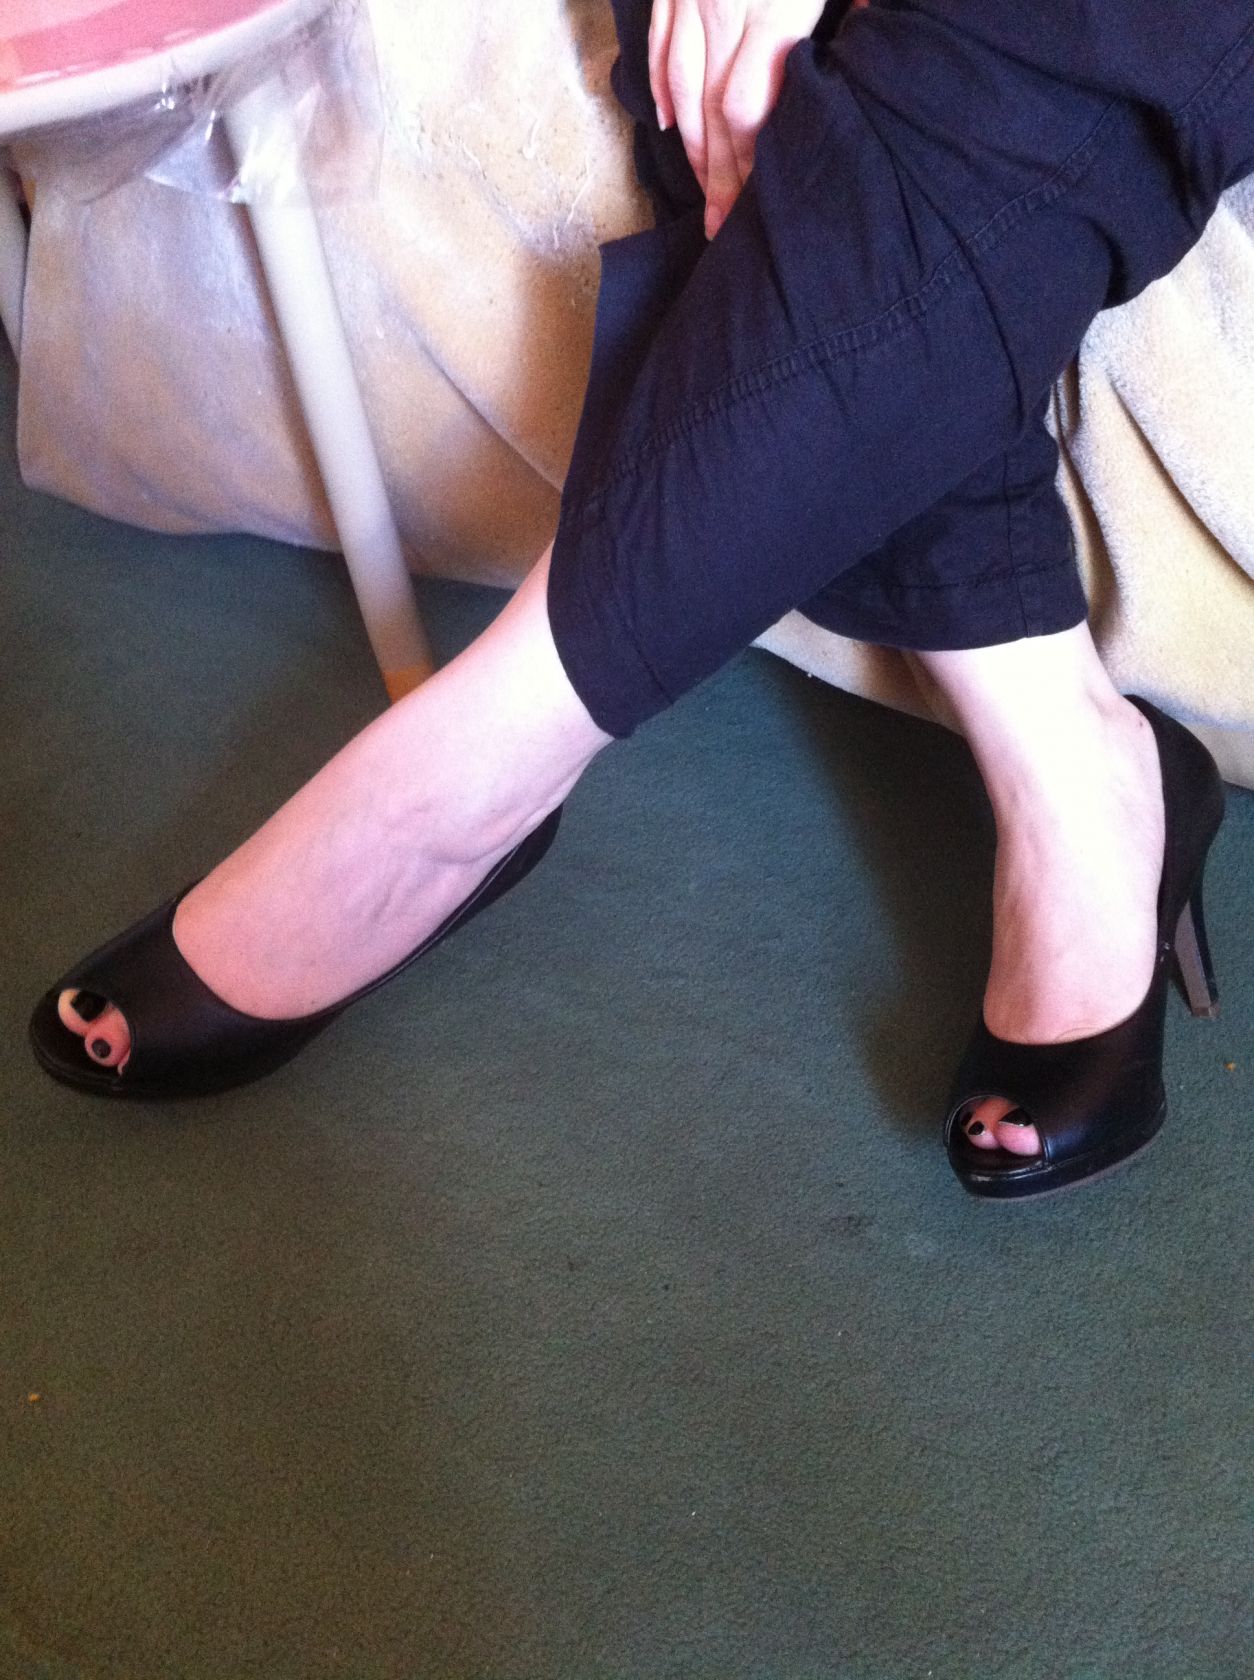 My wife's heels2